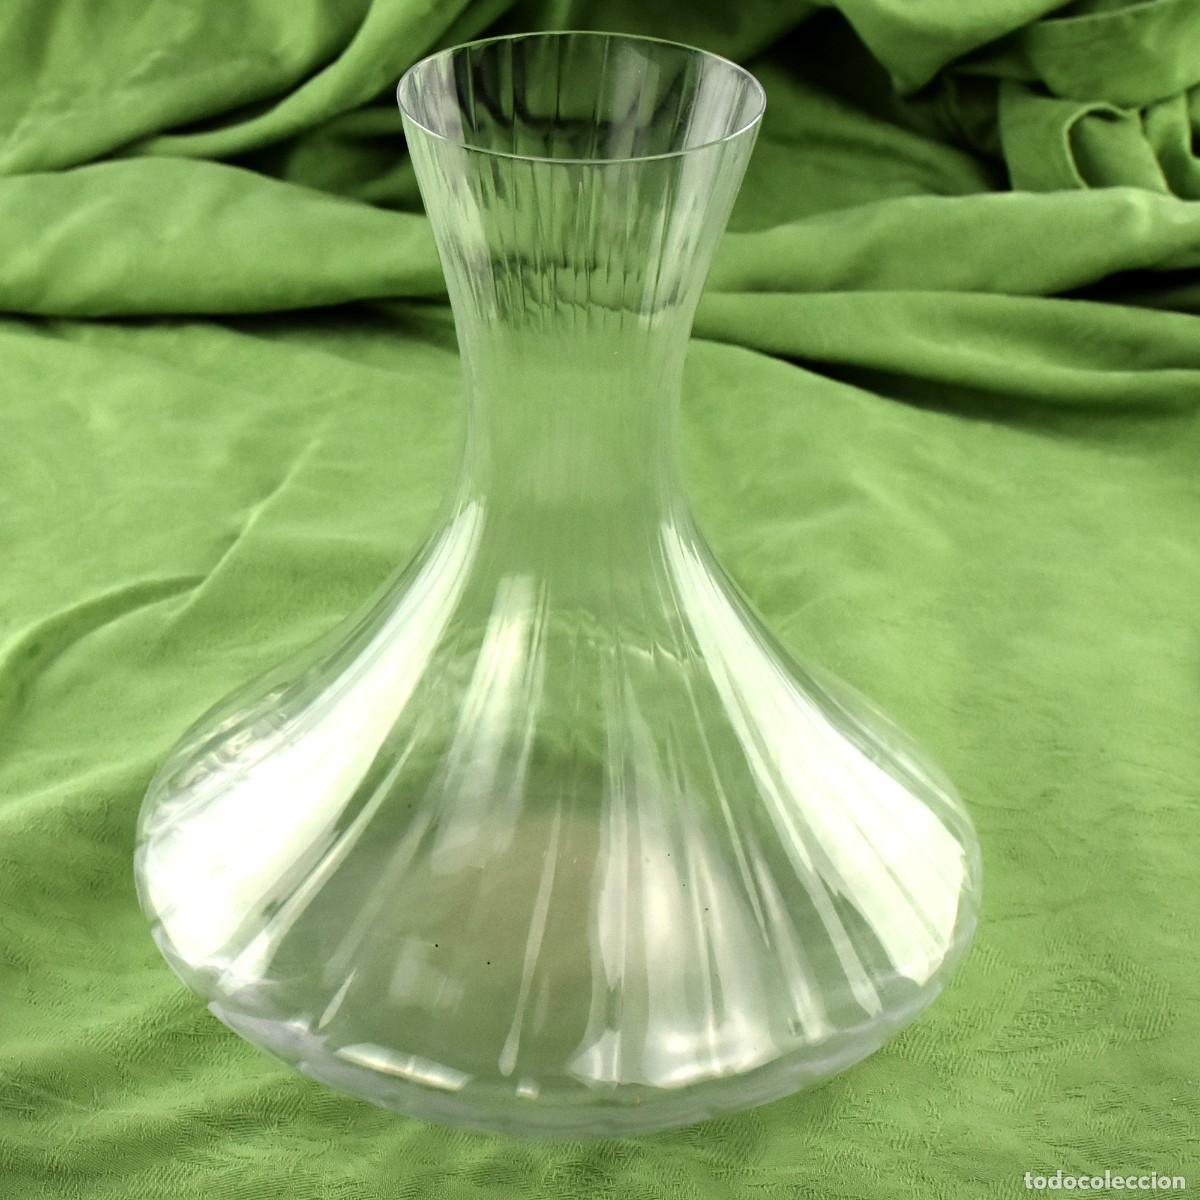 vajilla cristal vintage duralex ámbar. años 60- - Buy Vintage glass and  crystal objects on todocoleccion